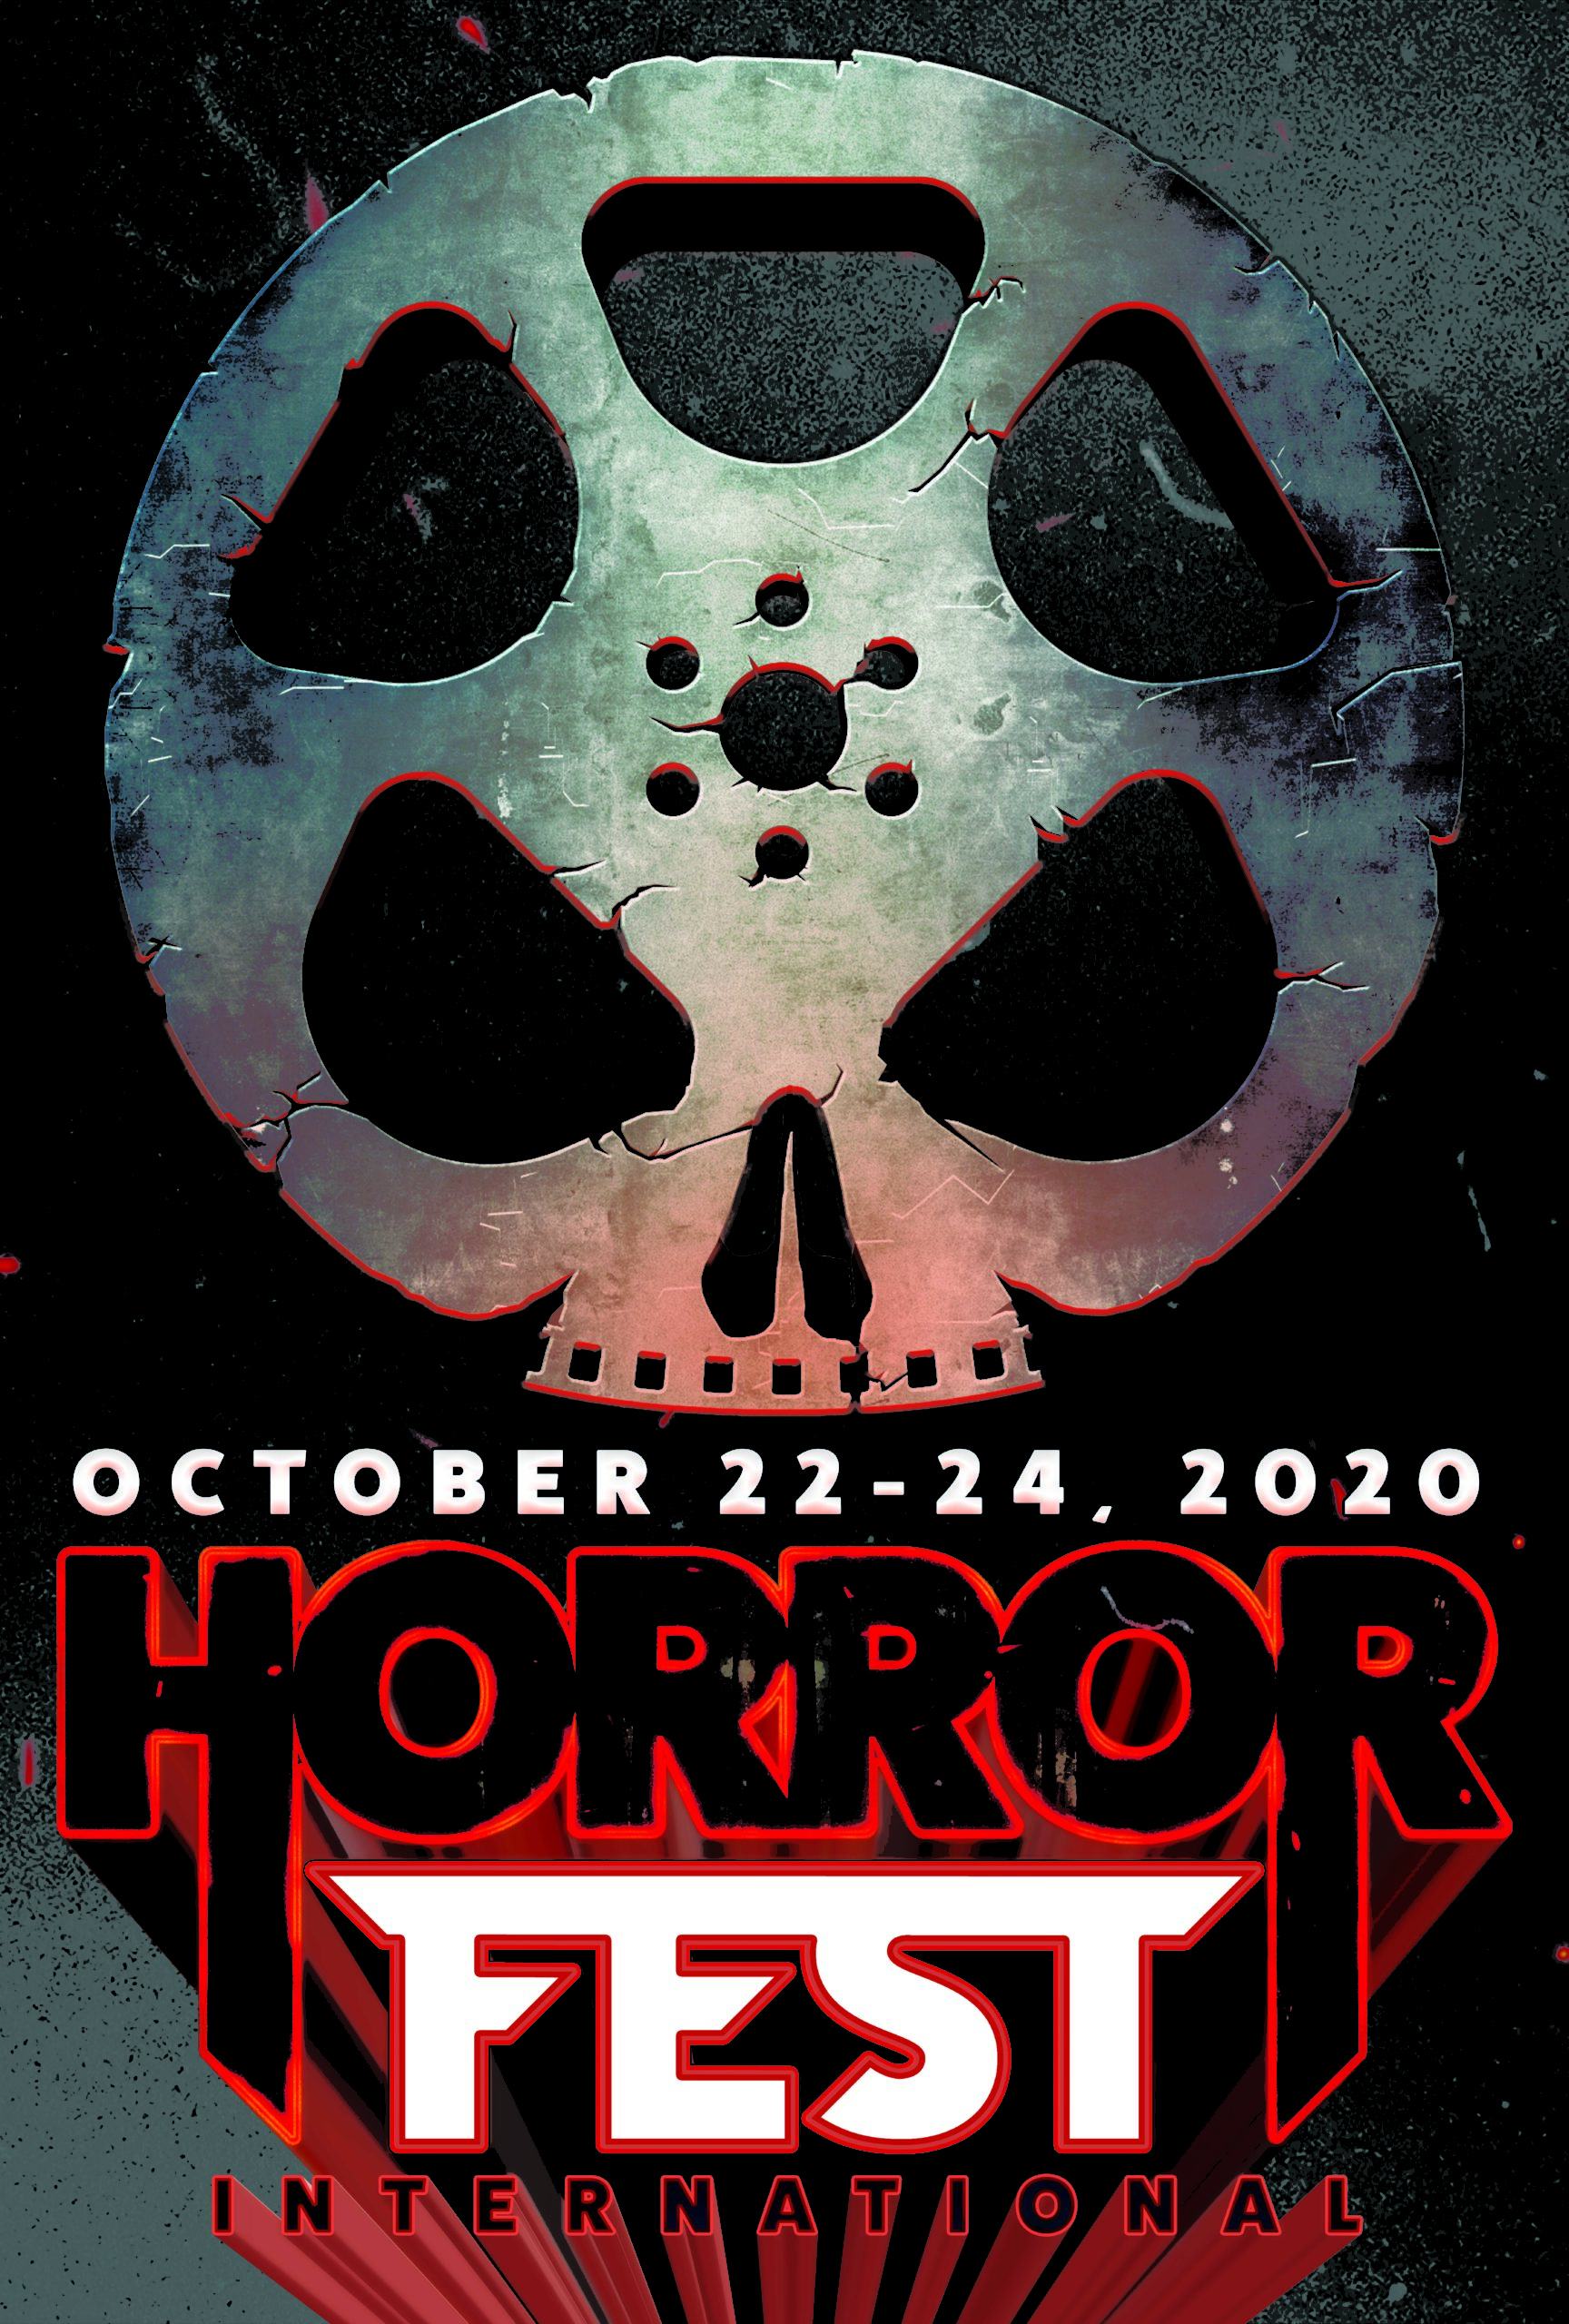 Genrebased film festival ‘Horrorfest International’ to be highlighted by 46 horror films